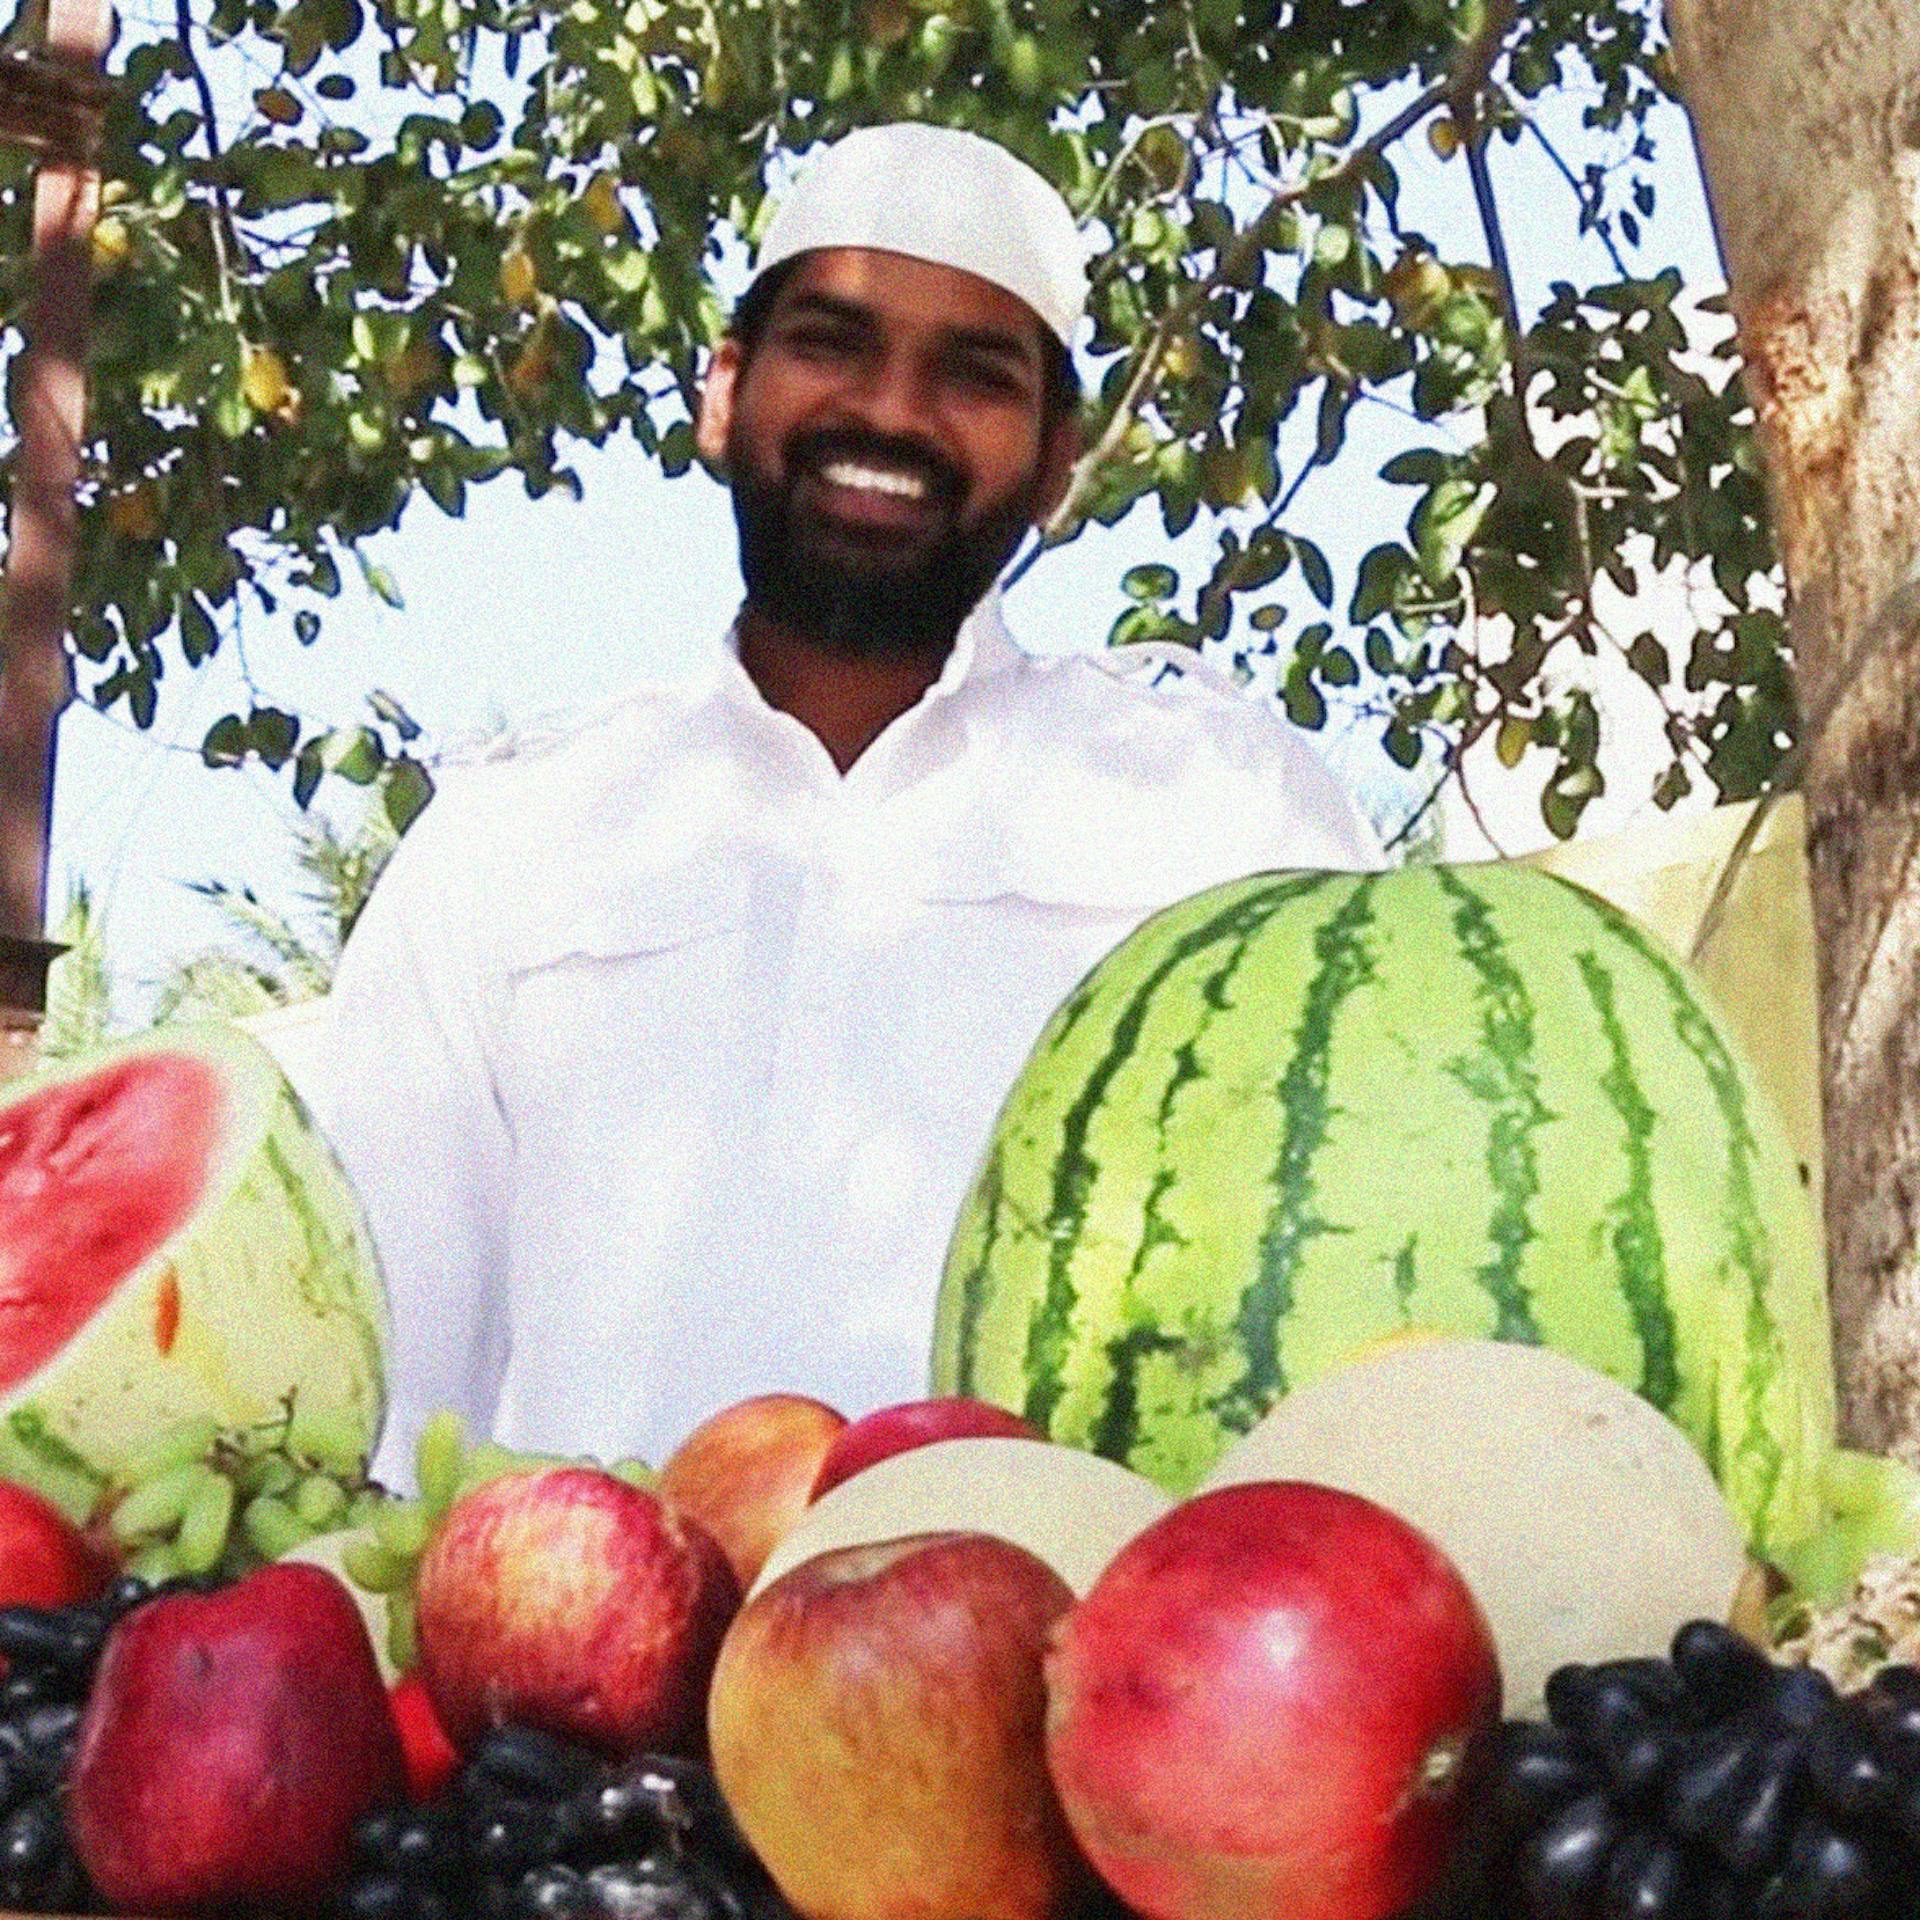 Khwaja Moinuddin's fruit custard video has almost 1.4 million views on YouTube.